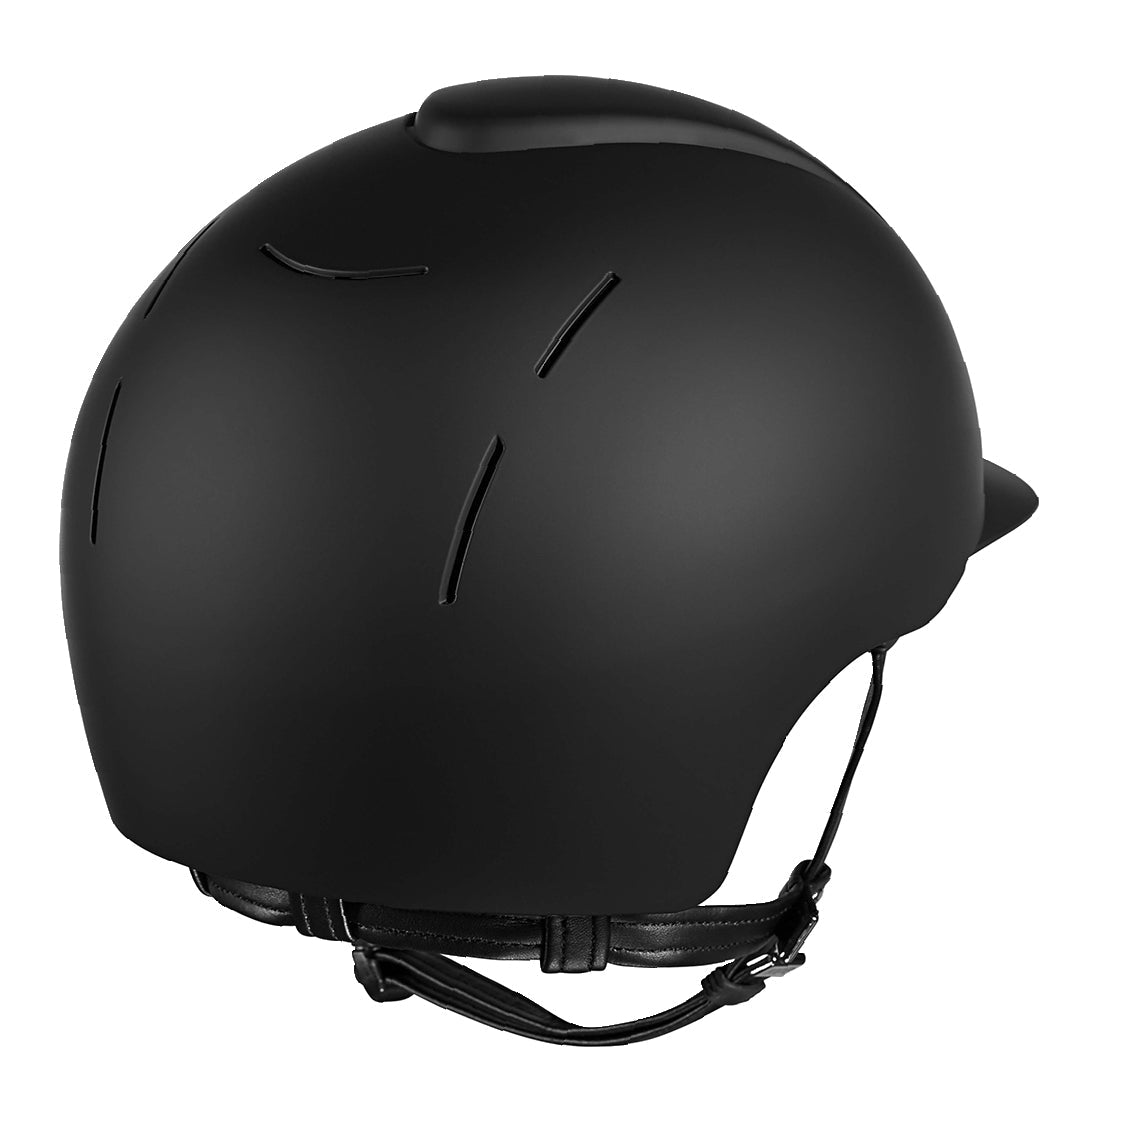 KEP Smart Riding Helmet - Matt Finish - Black - Medium (52cm-58cm)